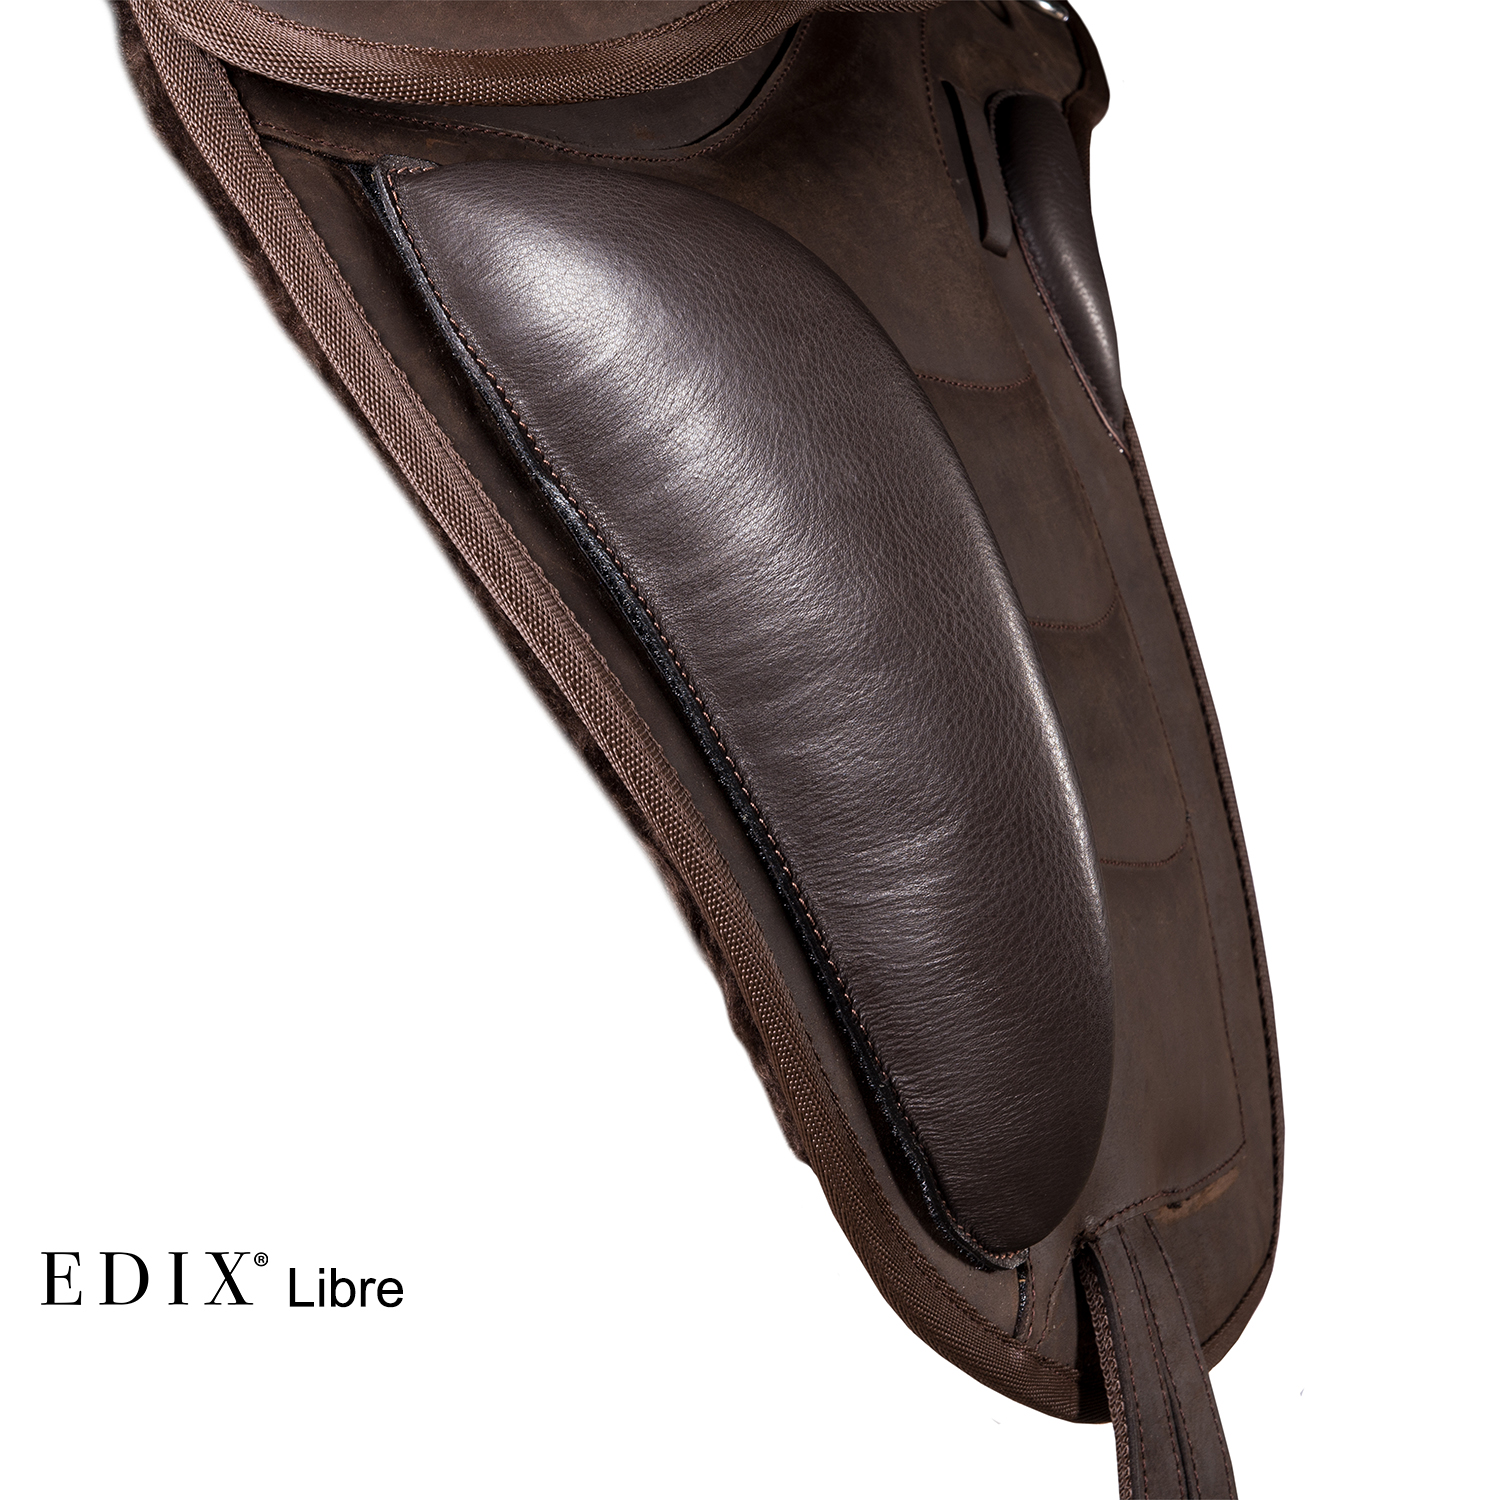 EDIX Libre – Equus Sensus